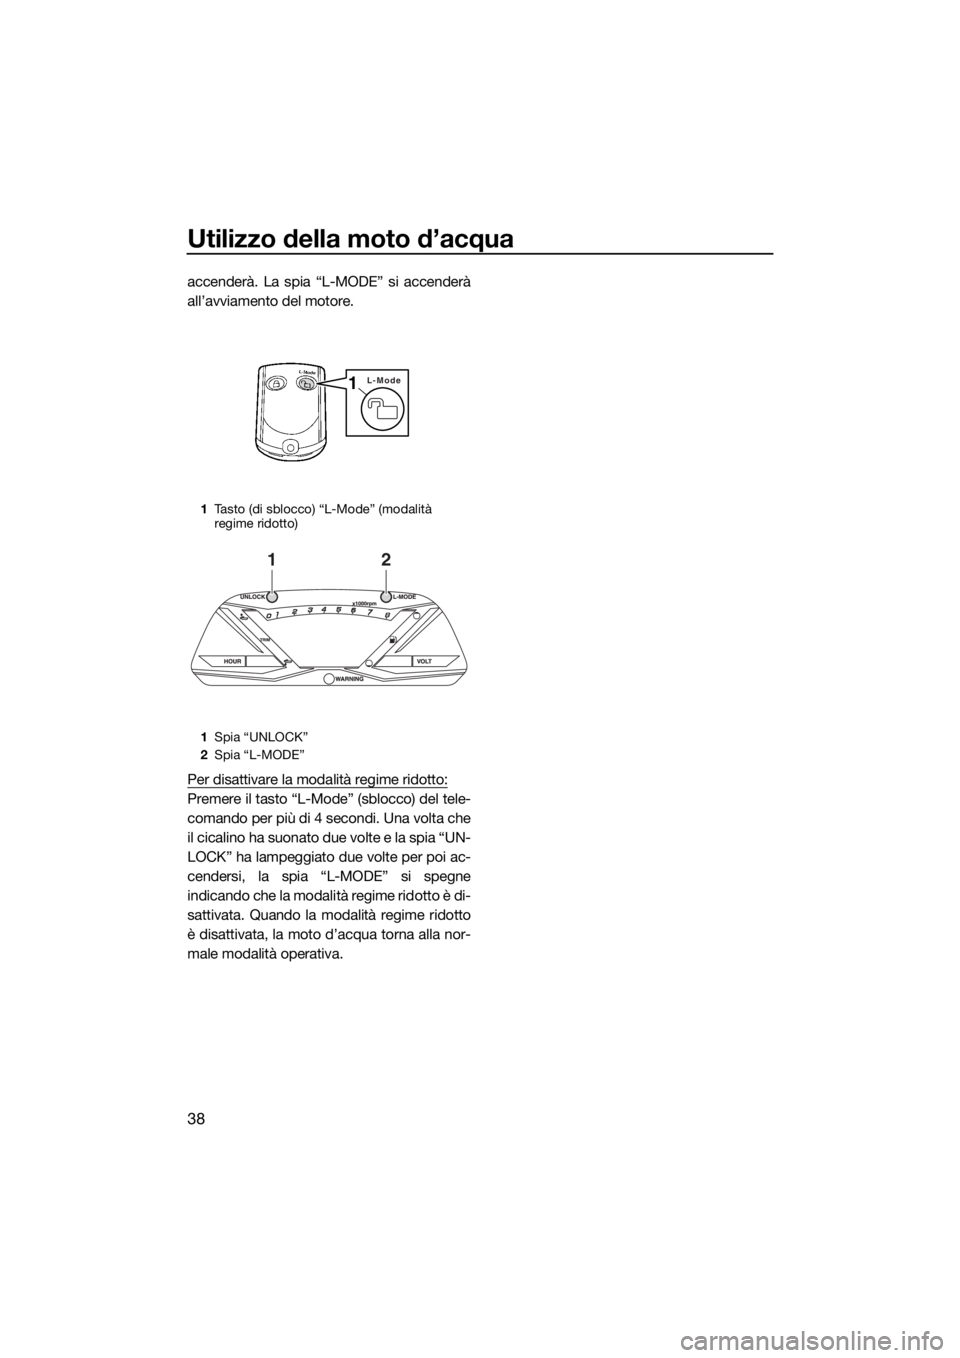 YAMAHA GP1800 2017  Manuale duso (in Italian) Utilizzo della moto d’acqua
38
accenderà. La spia “L-MODE” si accenderà
all’avviamento del motore.
Per disattivare la modalità regime ridotto:
Premere il tasto “L-Mode” (sblocco) del te